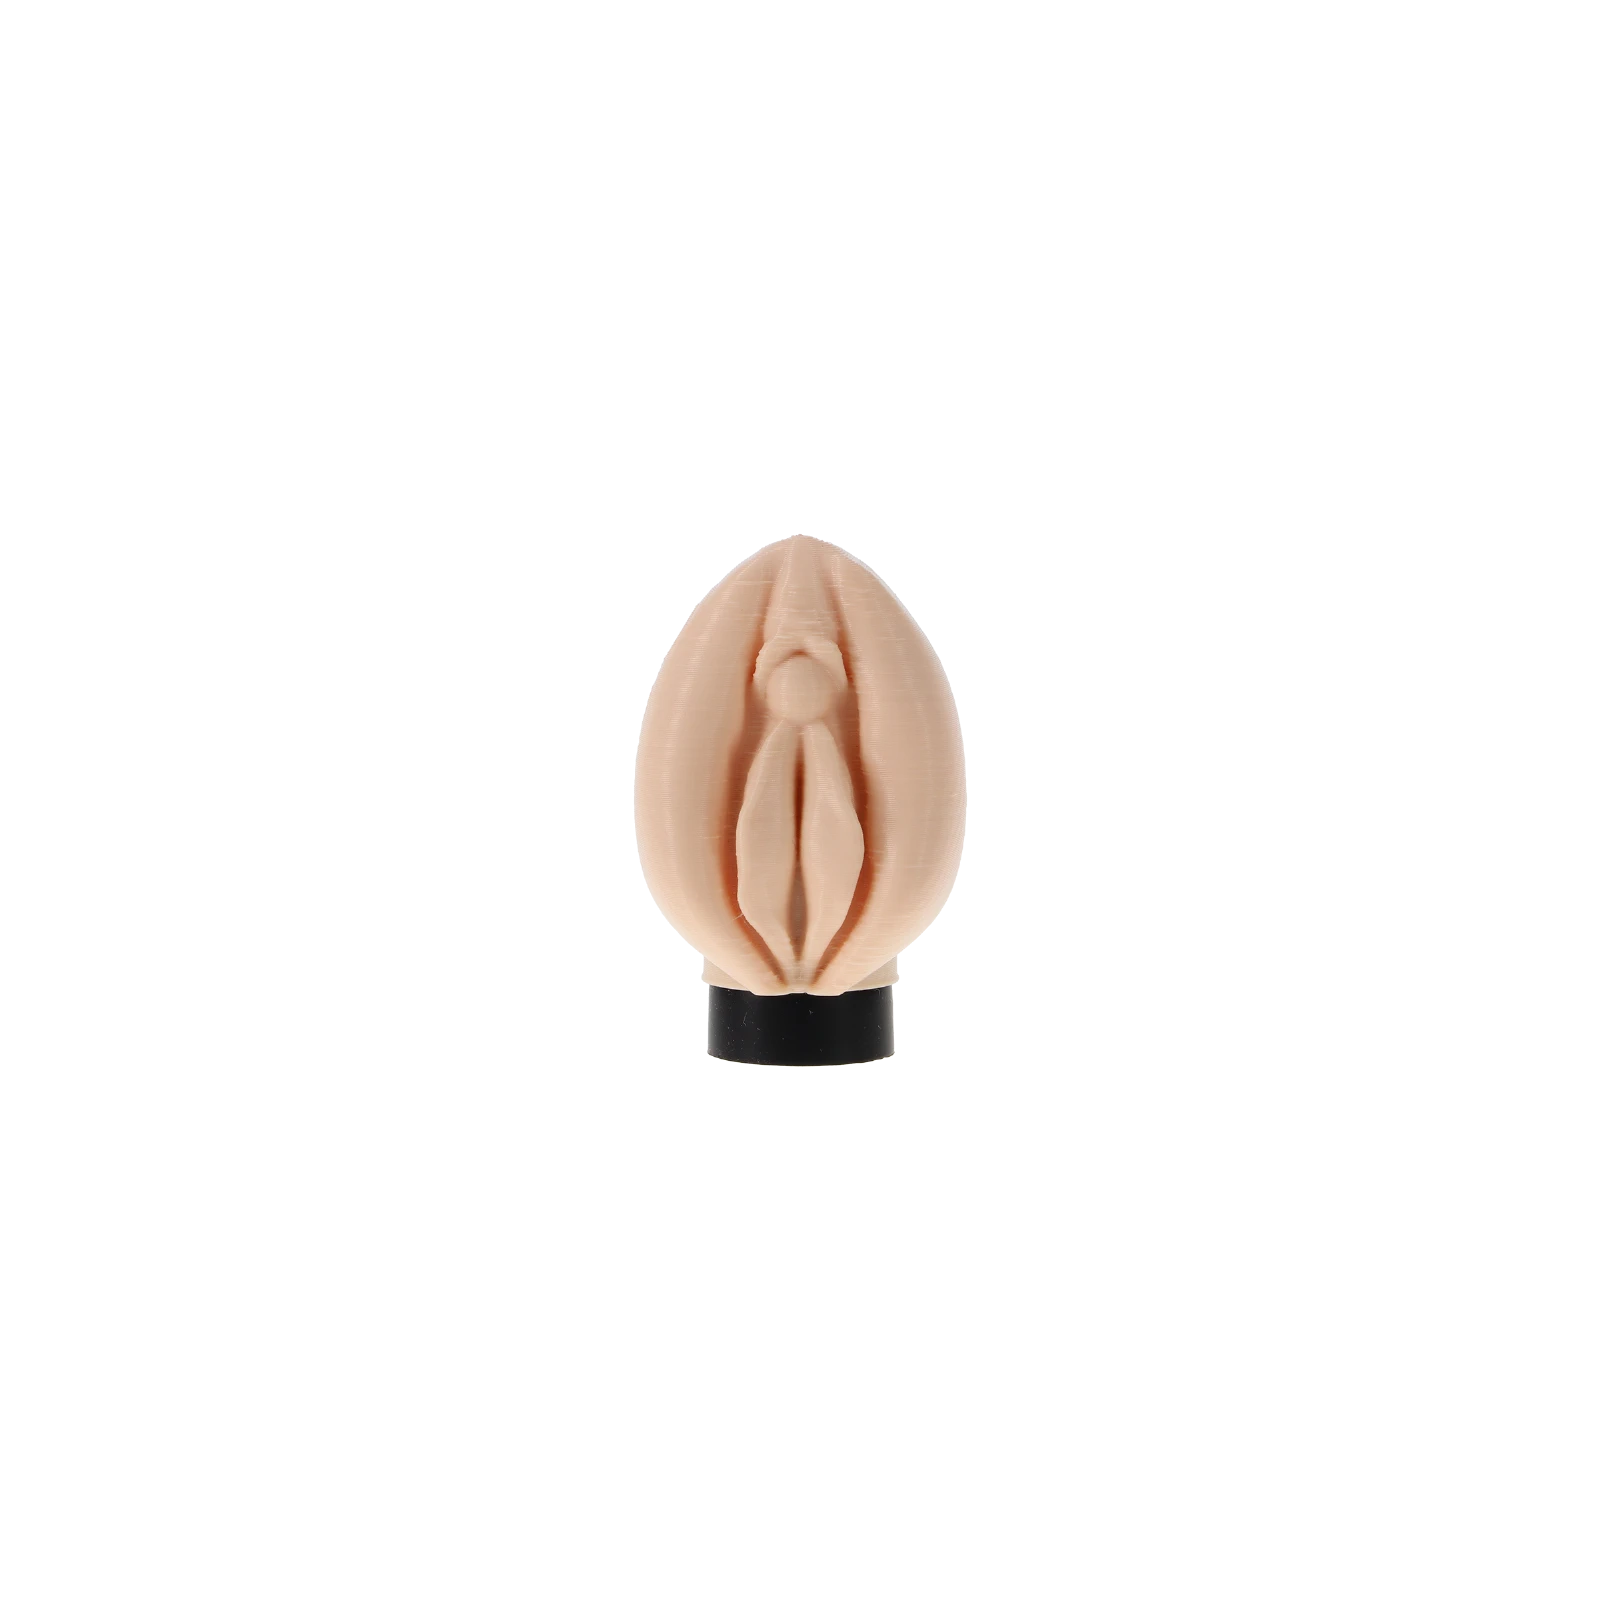 HOOKAiN 3D Mouthpiece Clit Lip Shishamundst?ck